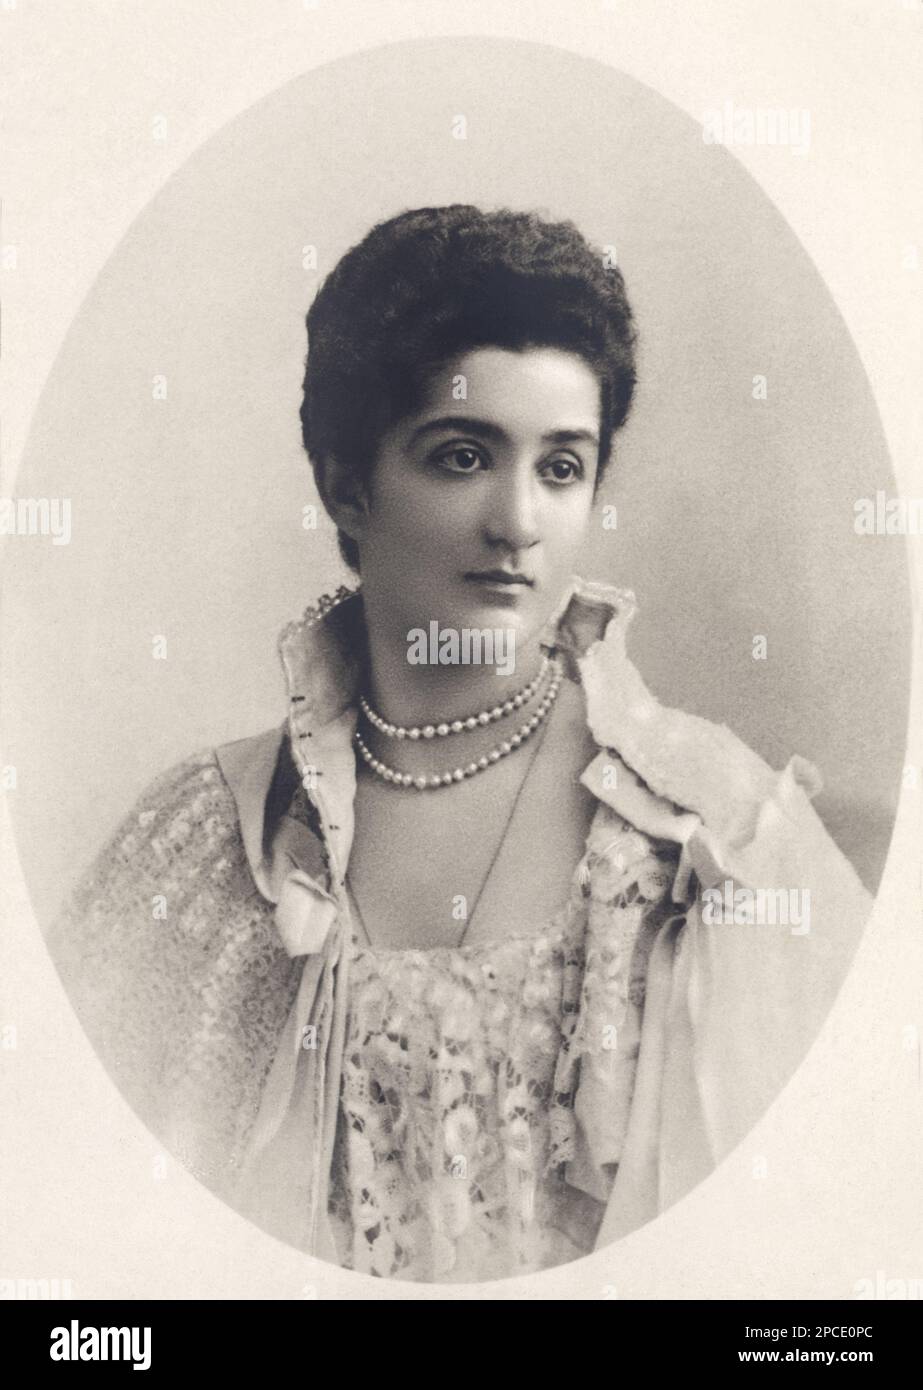 1900 ca. , ITALIA : la Regina d'Italia ELENA ( Elena del Montenegro , 1873 - 1952 ) Ritratto ufficiale - CASA SAVOIA - ITALIA - REALI - Nobiltà ITALIANA - NOBILTÀ - ROYALTY - STORIA - FOTO STORICHE - gioielleria - gioielli - gioielli - collana di perle - collana - decolleté - pizzo - BELLE EPOQUE - chignon ---- Archivio GBB Foto Stock